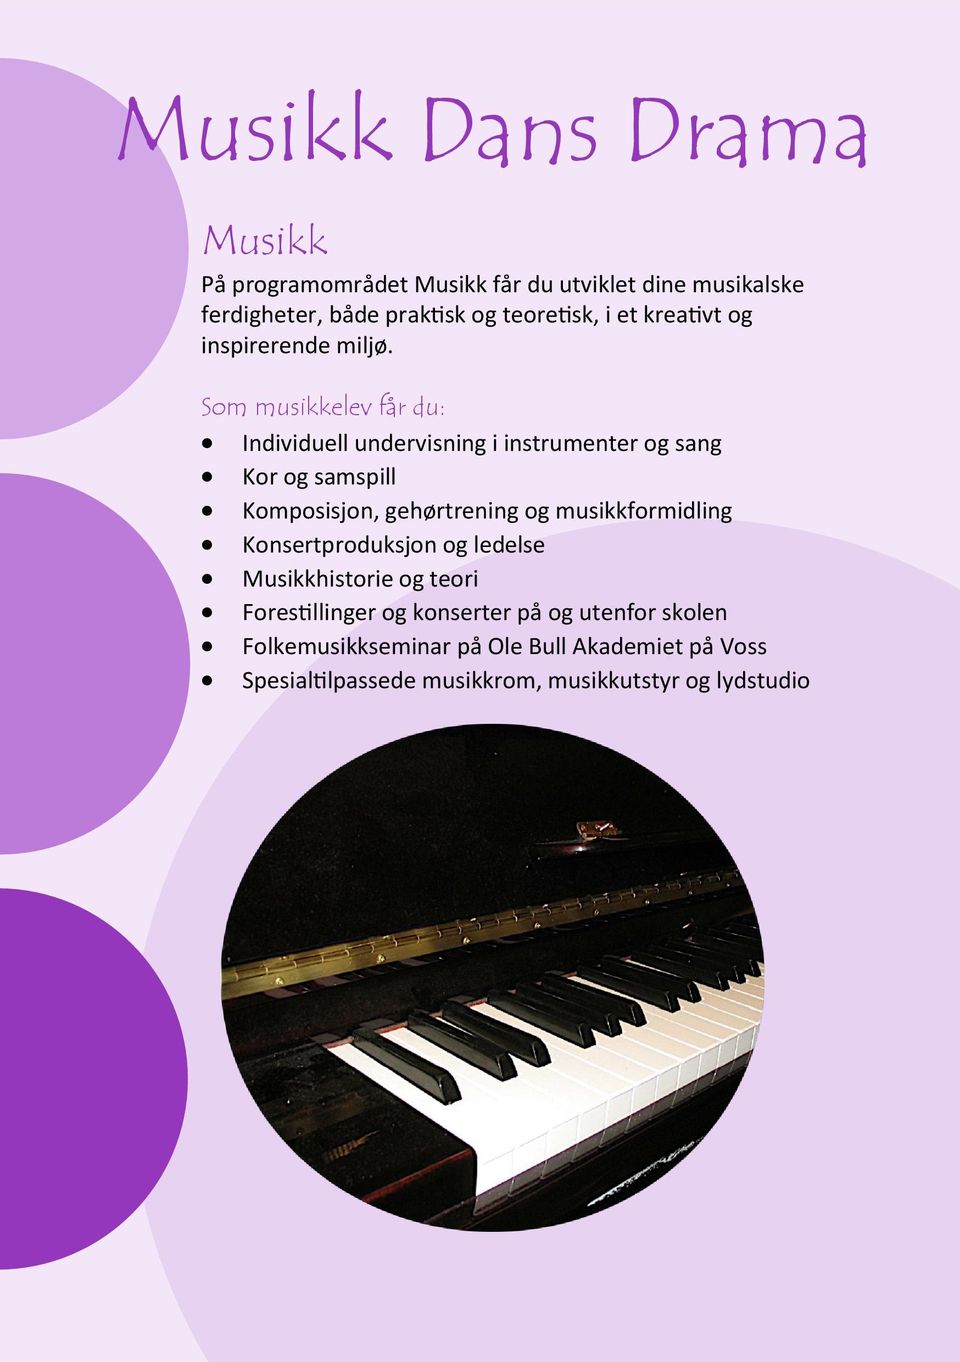 Som musikkelev får du: Individuell undervisning i instrumenter og sang Kor og samspill Komposisjon, gehørtrening og